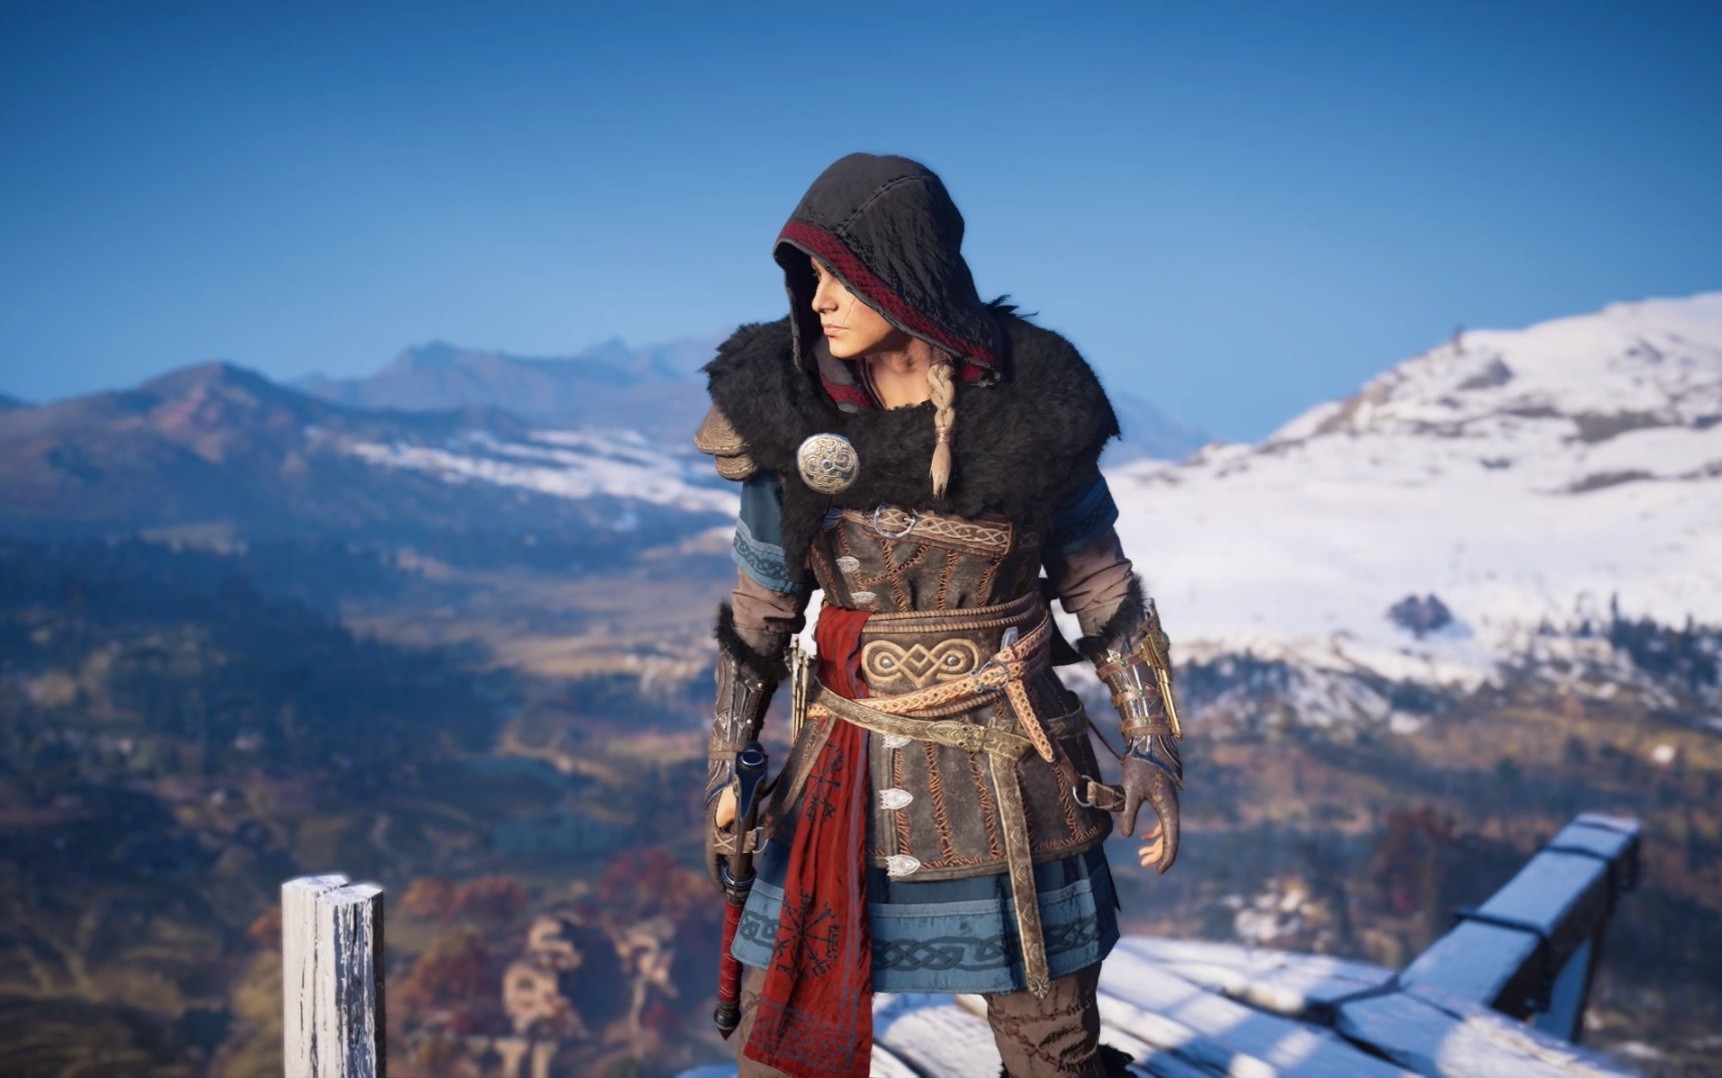 التحديث الأخير لـ Assassin's Creed Valhalla